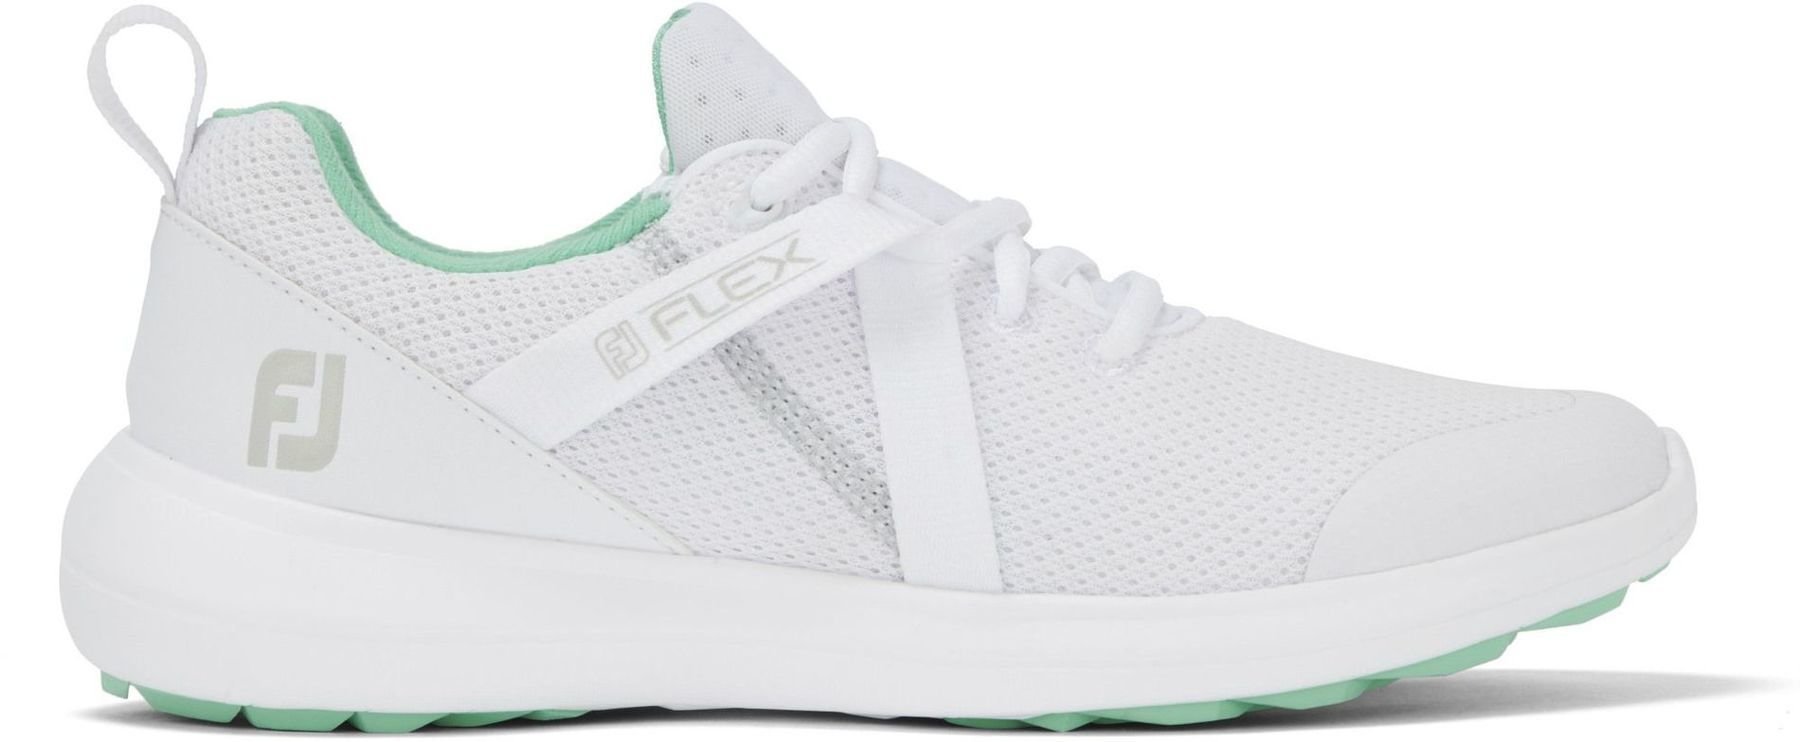 Chaussures de golf pour femmes Footjoy Flex White/Green 40